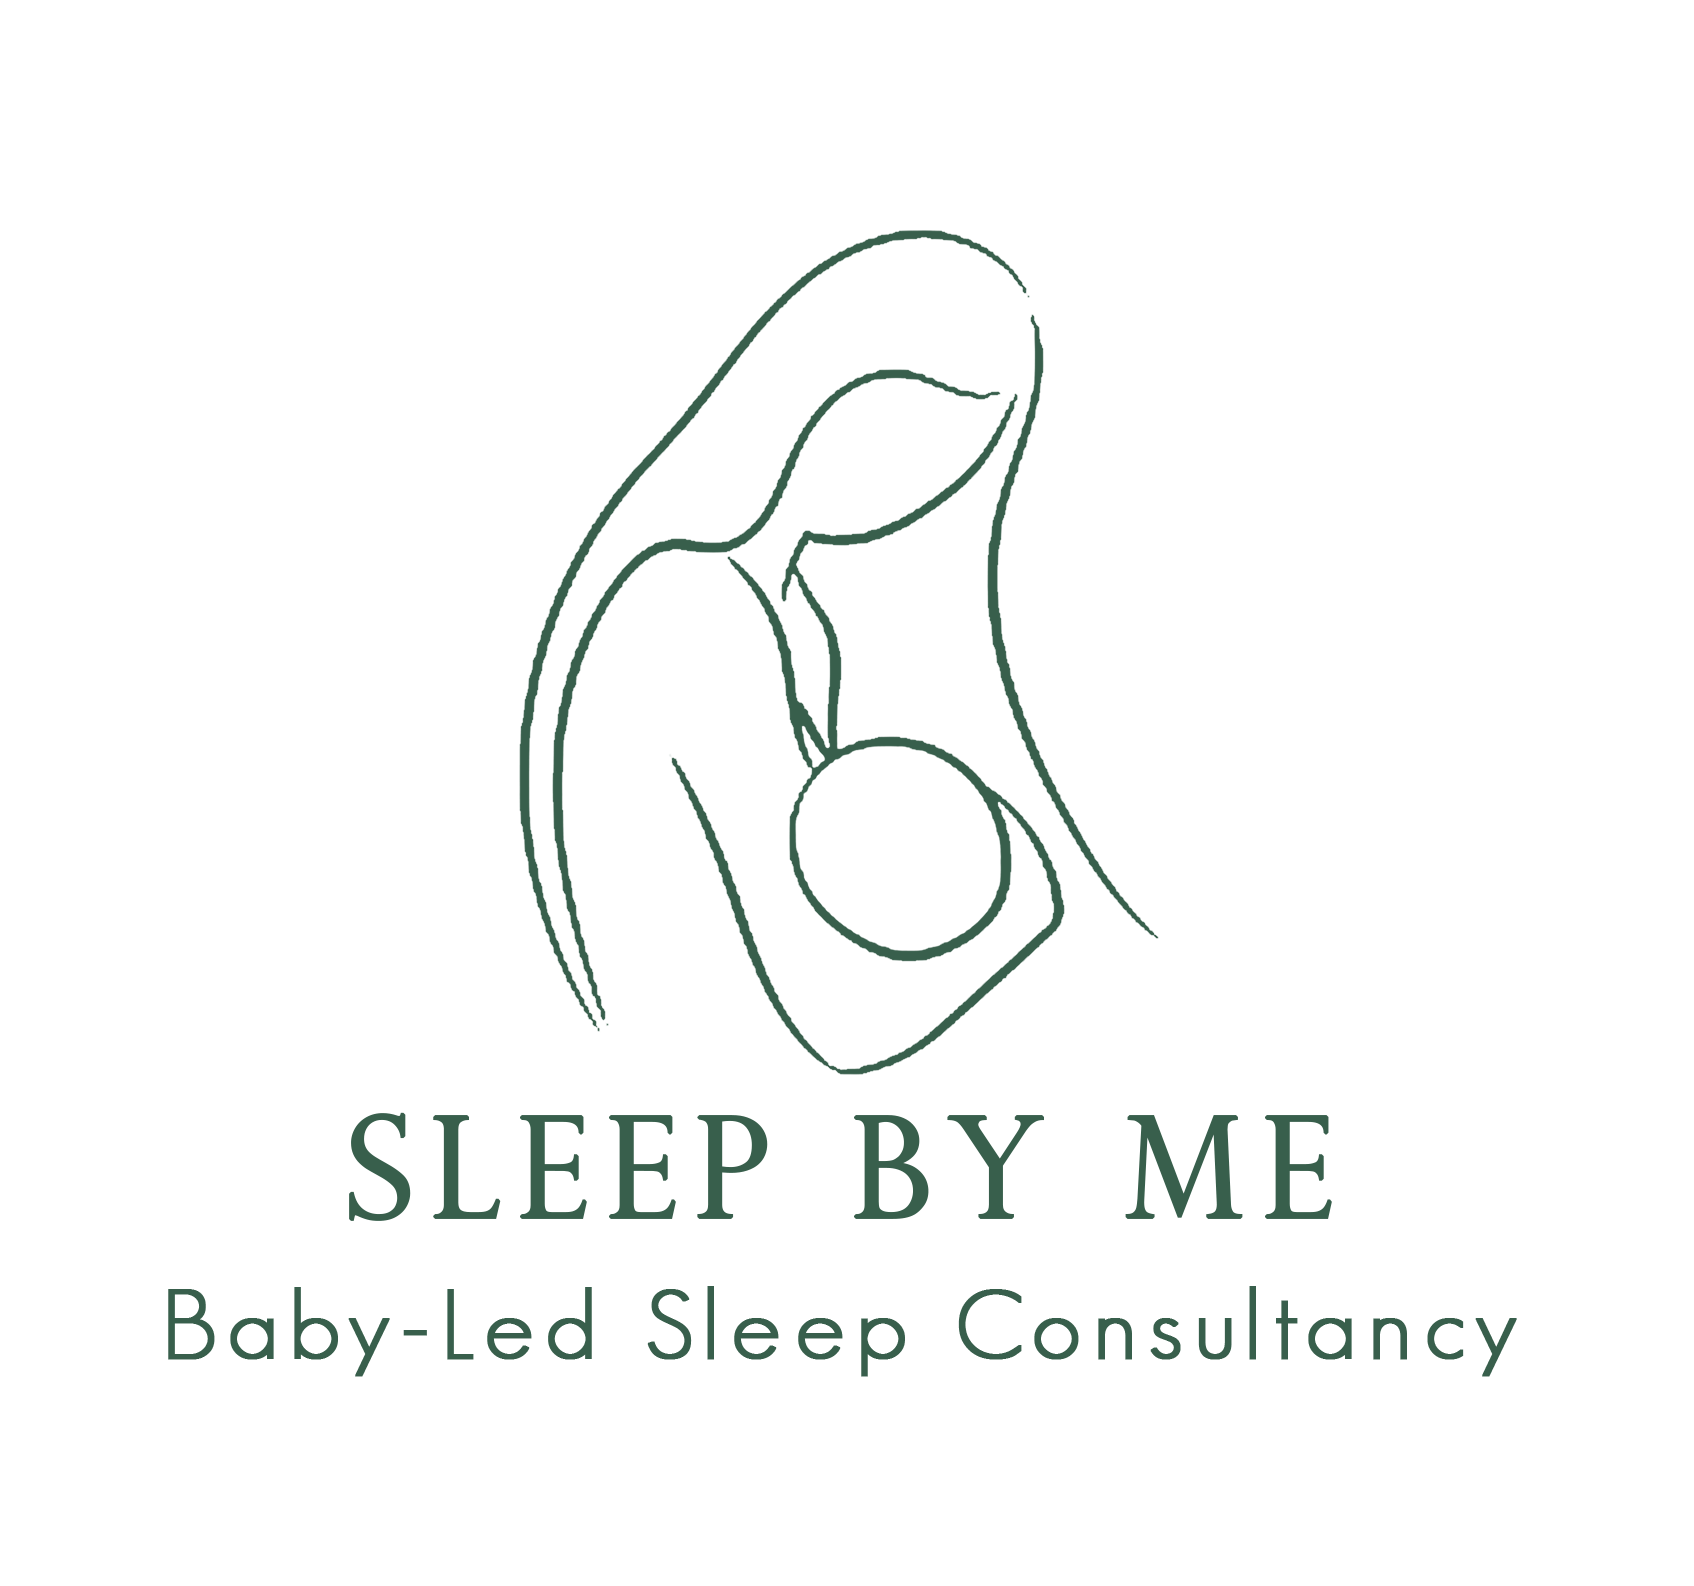 Sleep by Me's logo